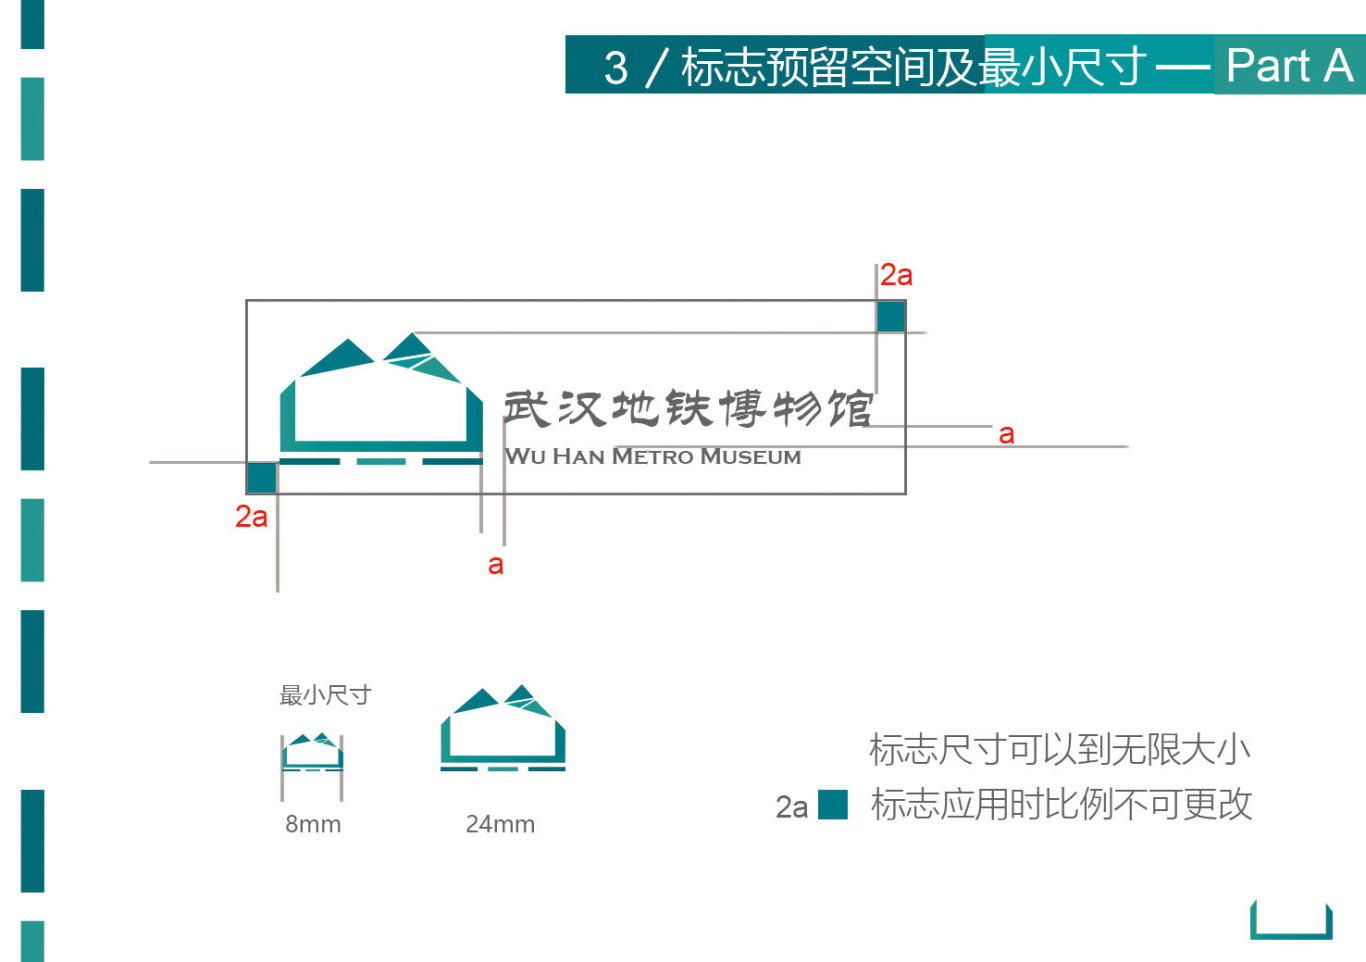 武漢地鐵博物館視覺識別設計圖4